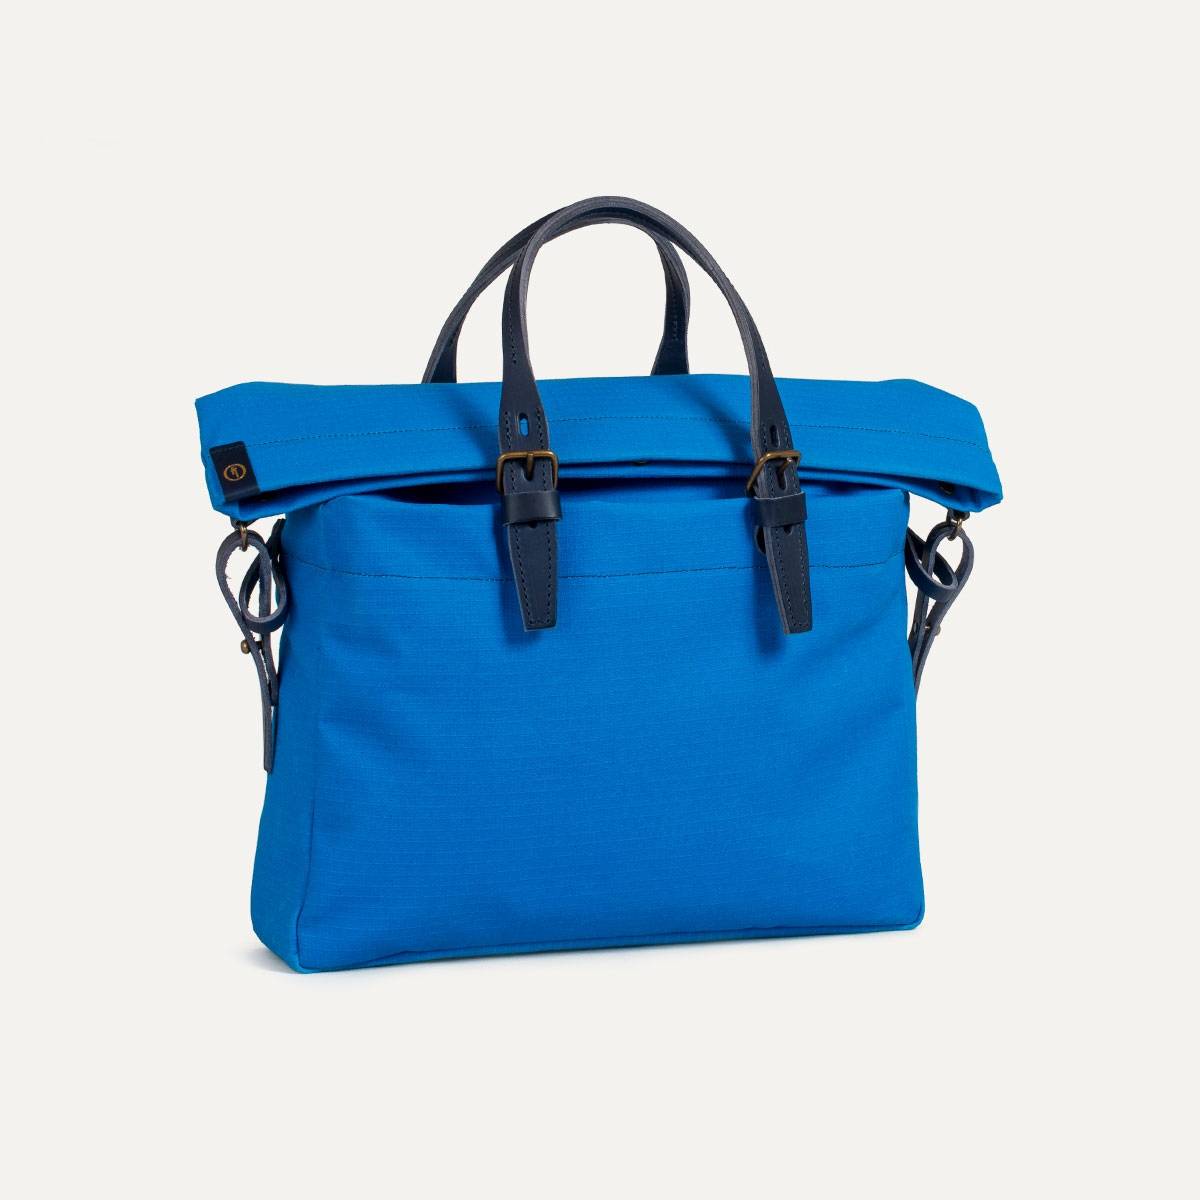 Remix business bag - regentex blue (image n°4)